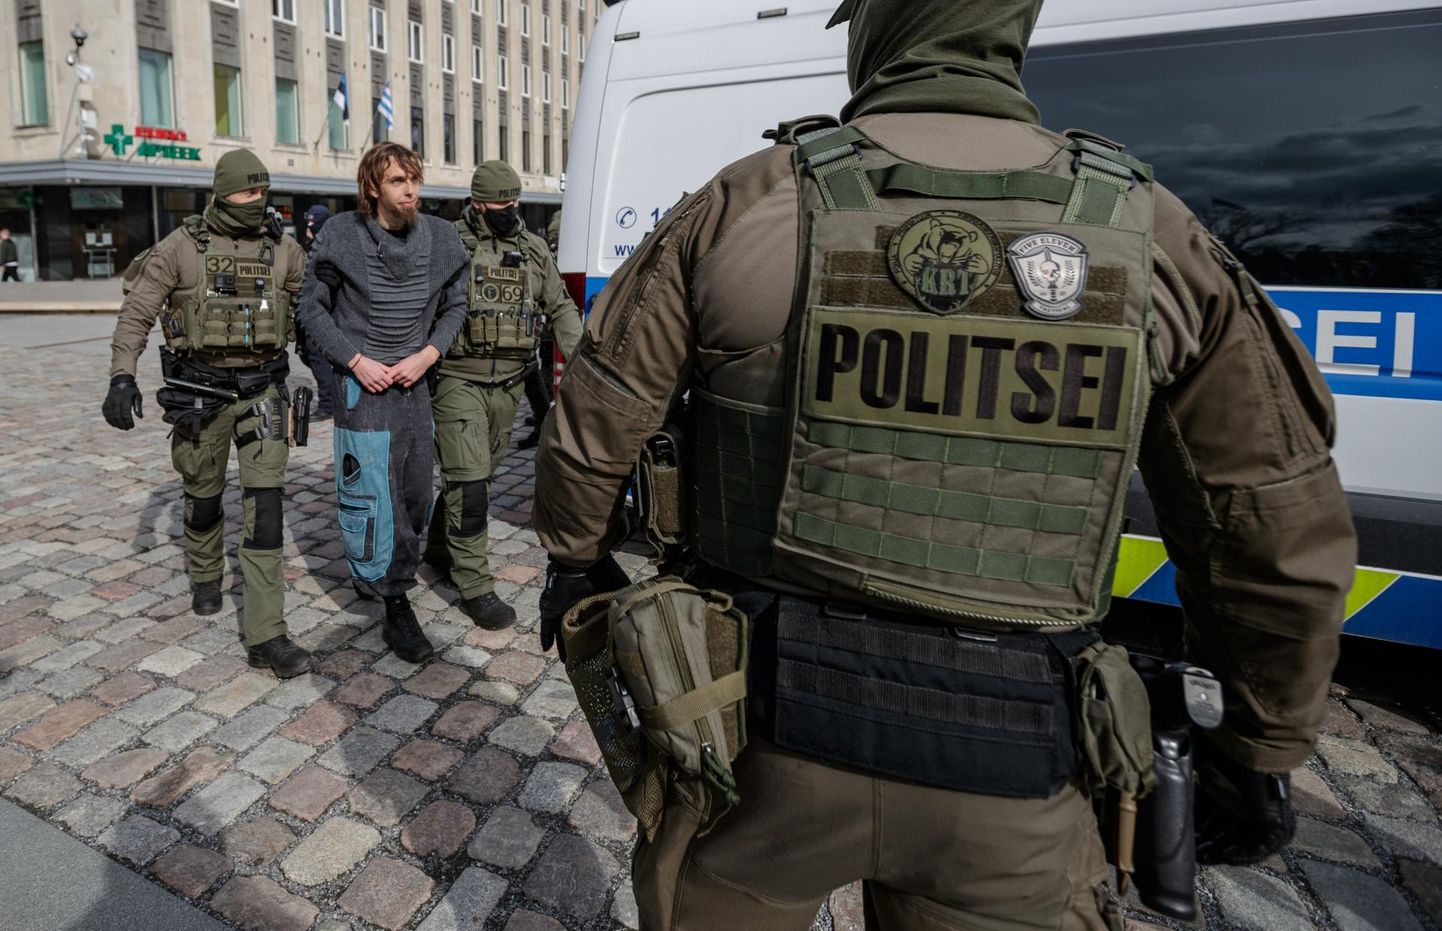 Politsei viis Tallinnas Vabaduse väljakul toimunud meeleavalduselt ära pilli mänginud mehe, kes ei allunud politsei korraldustele rahulikult ära minna ning palus seejärel ise korduvalt, et politsei ta minema toimetaks.